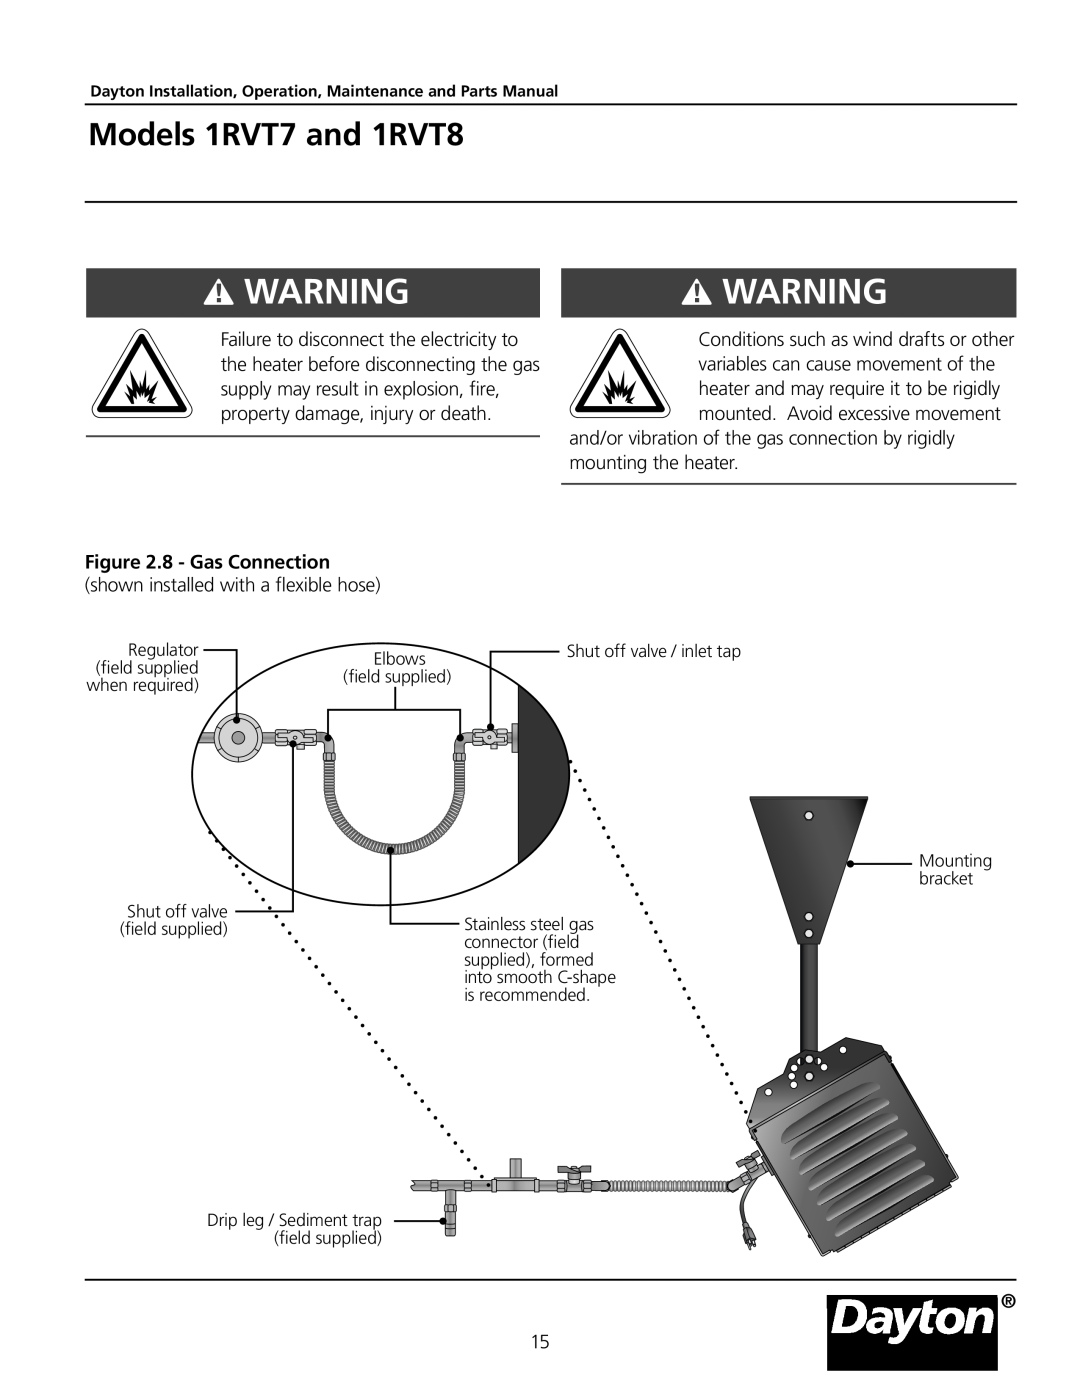 Dayton manual Warning! Warning, Models 1RVT7 and 1RVT8, 8 - Gas Connection 